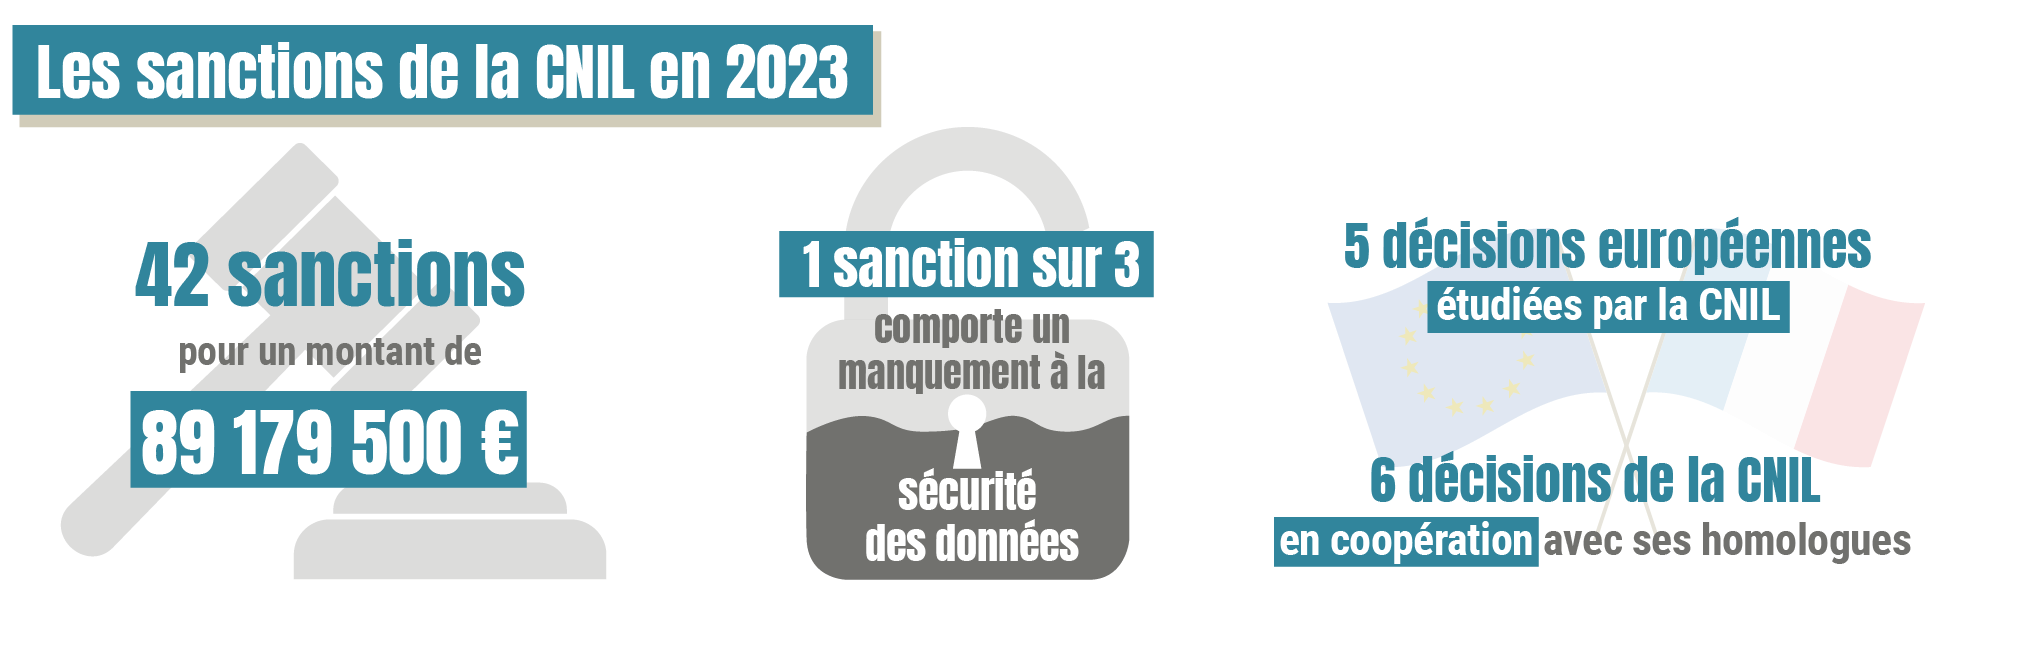 Infographie - les sanctions de la CNIL en 2023